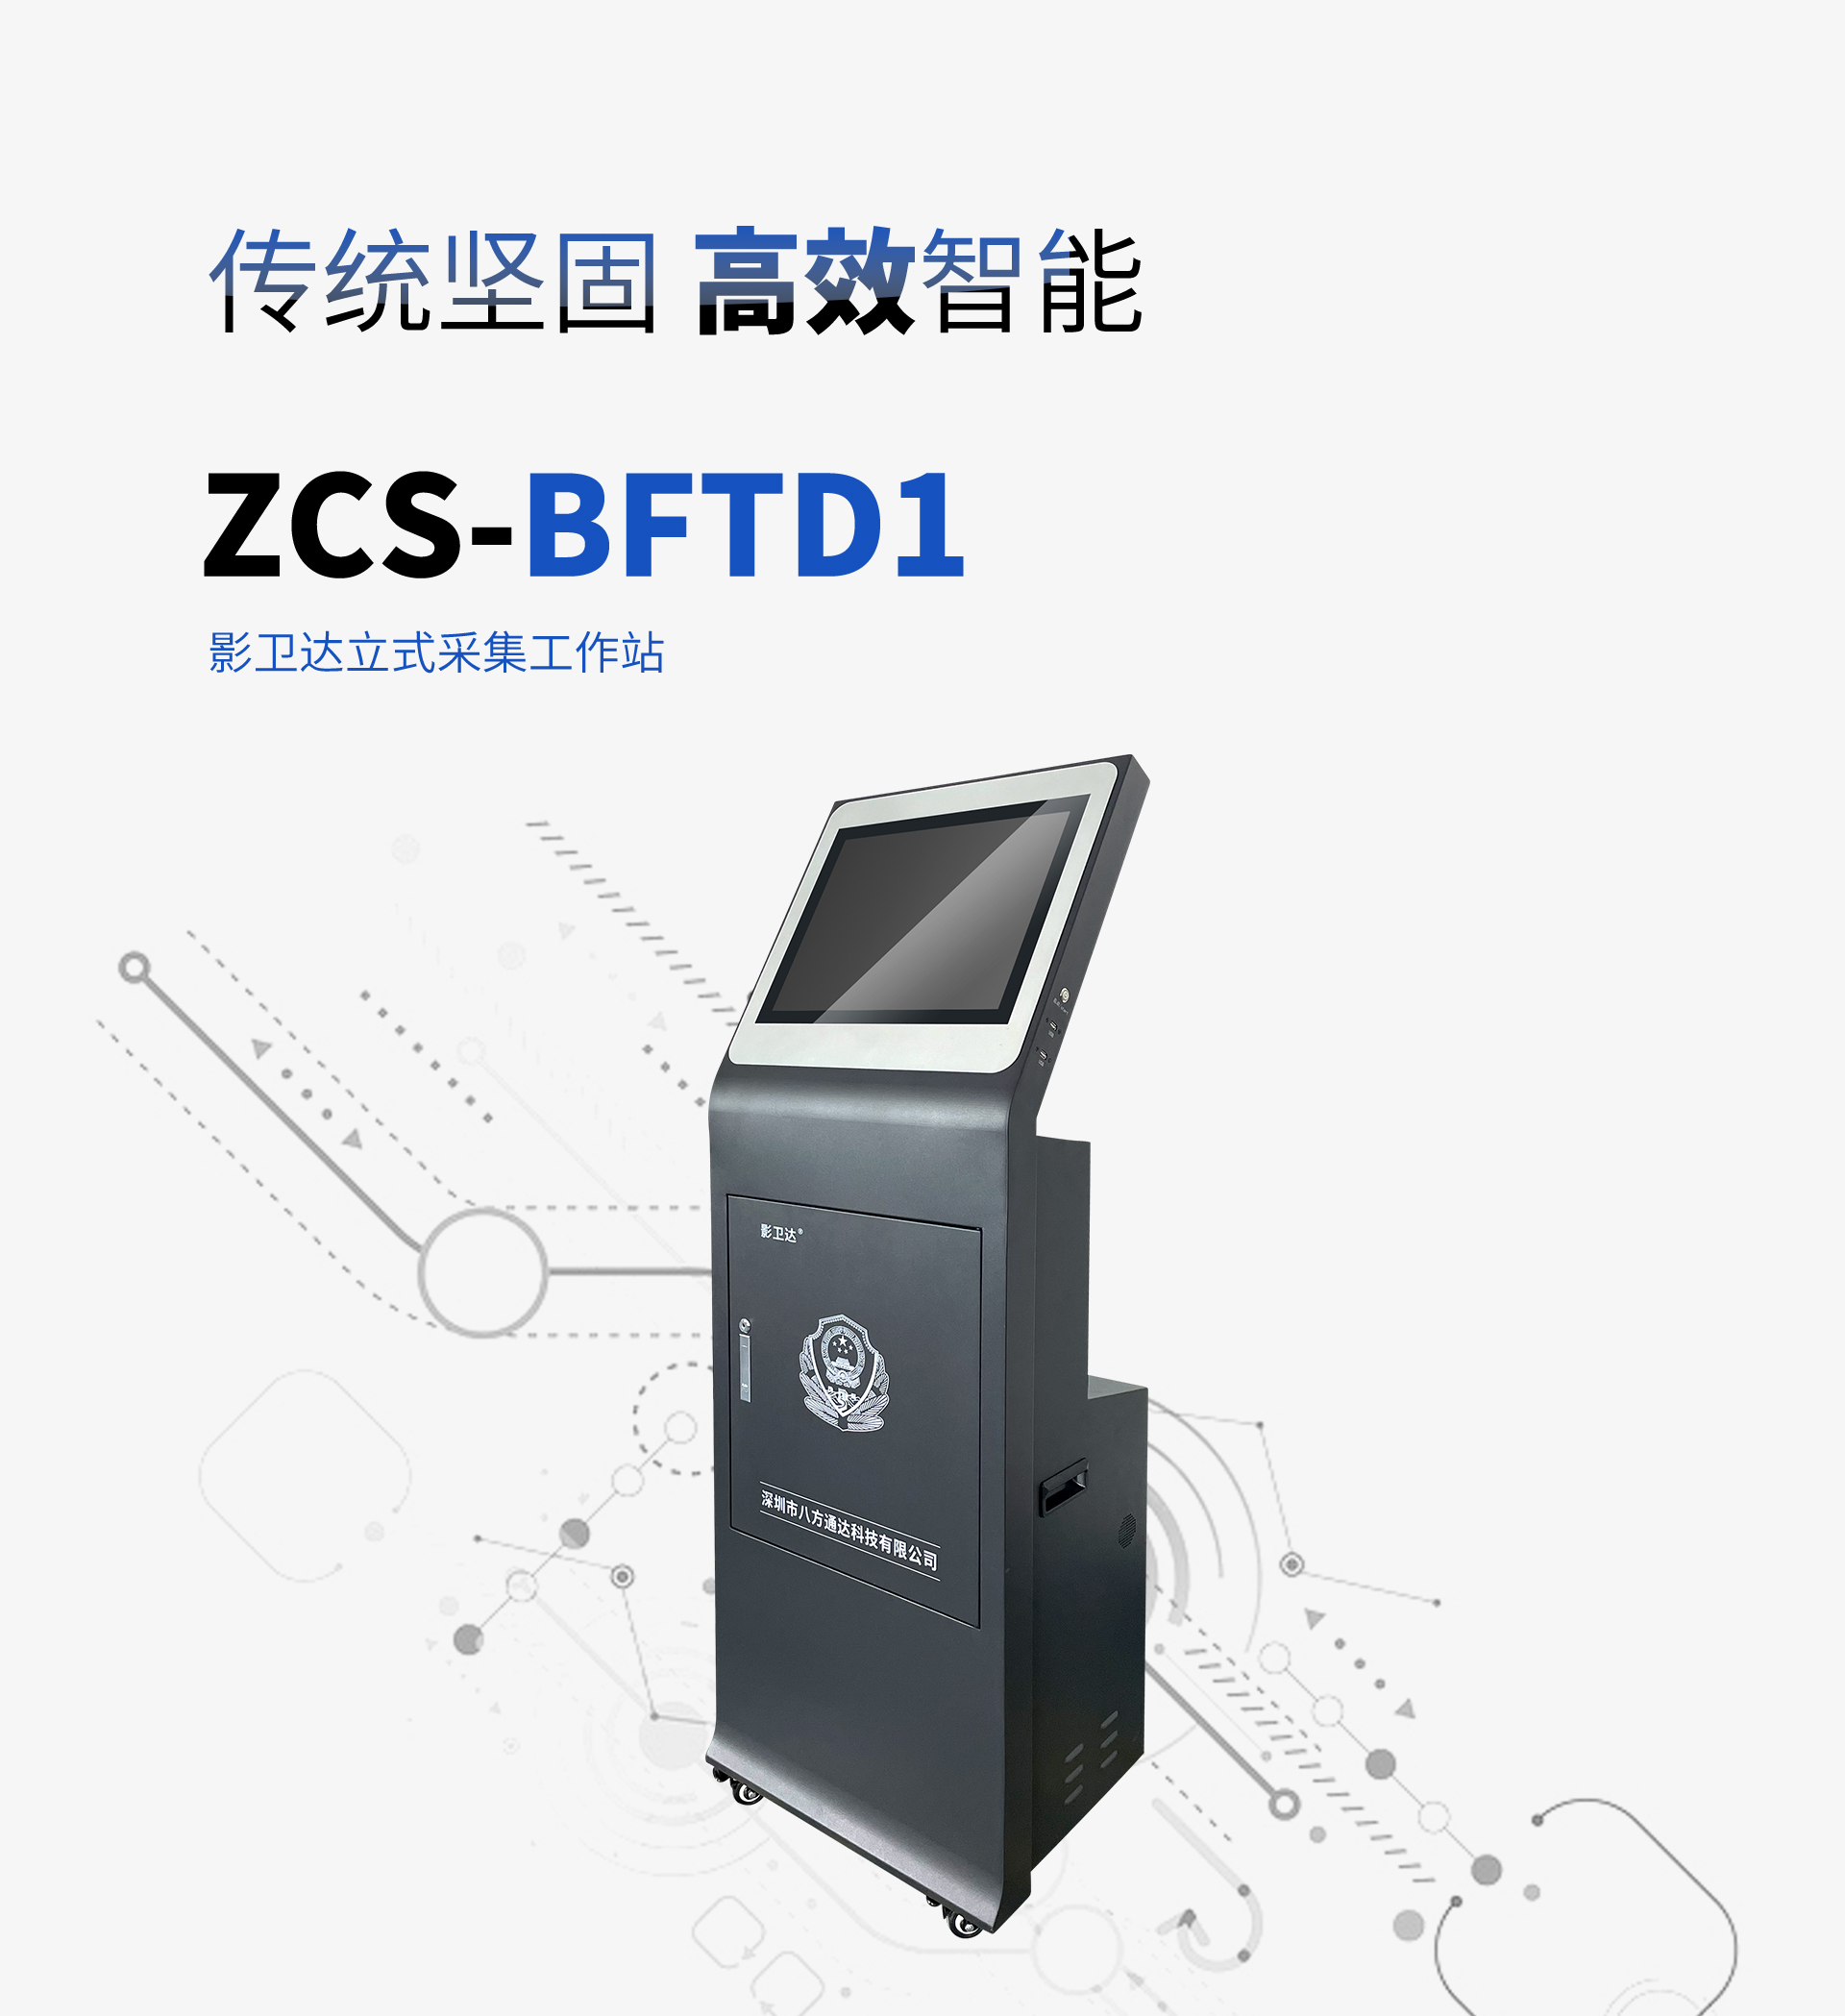 ZCS-BFTD1立式采集工作站_01.jpg